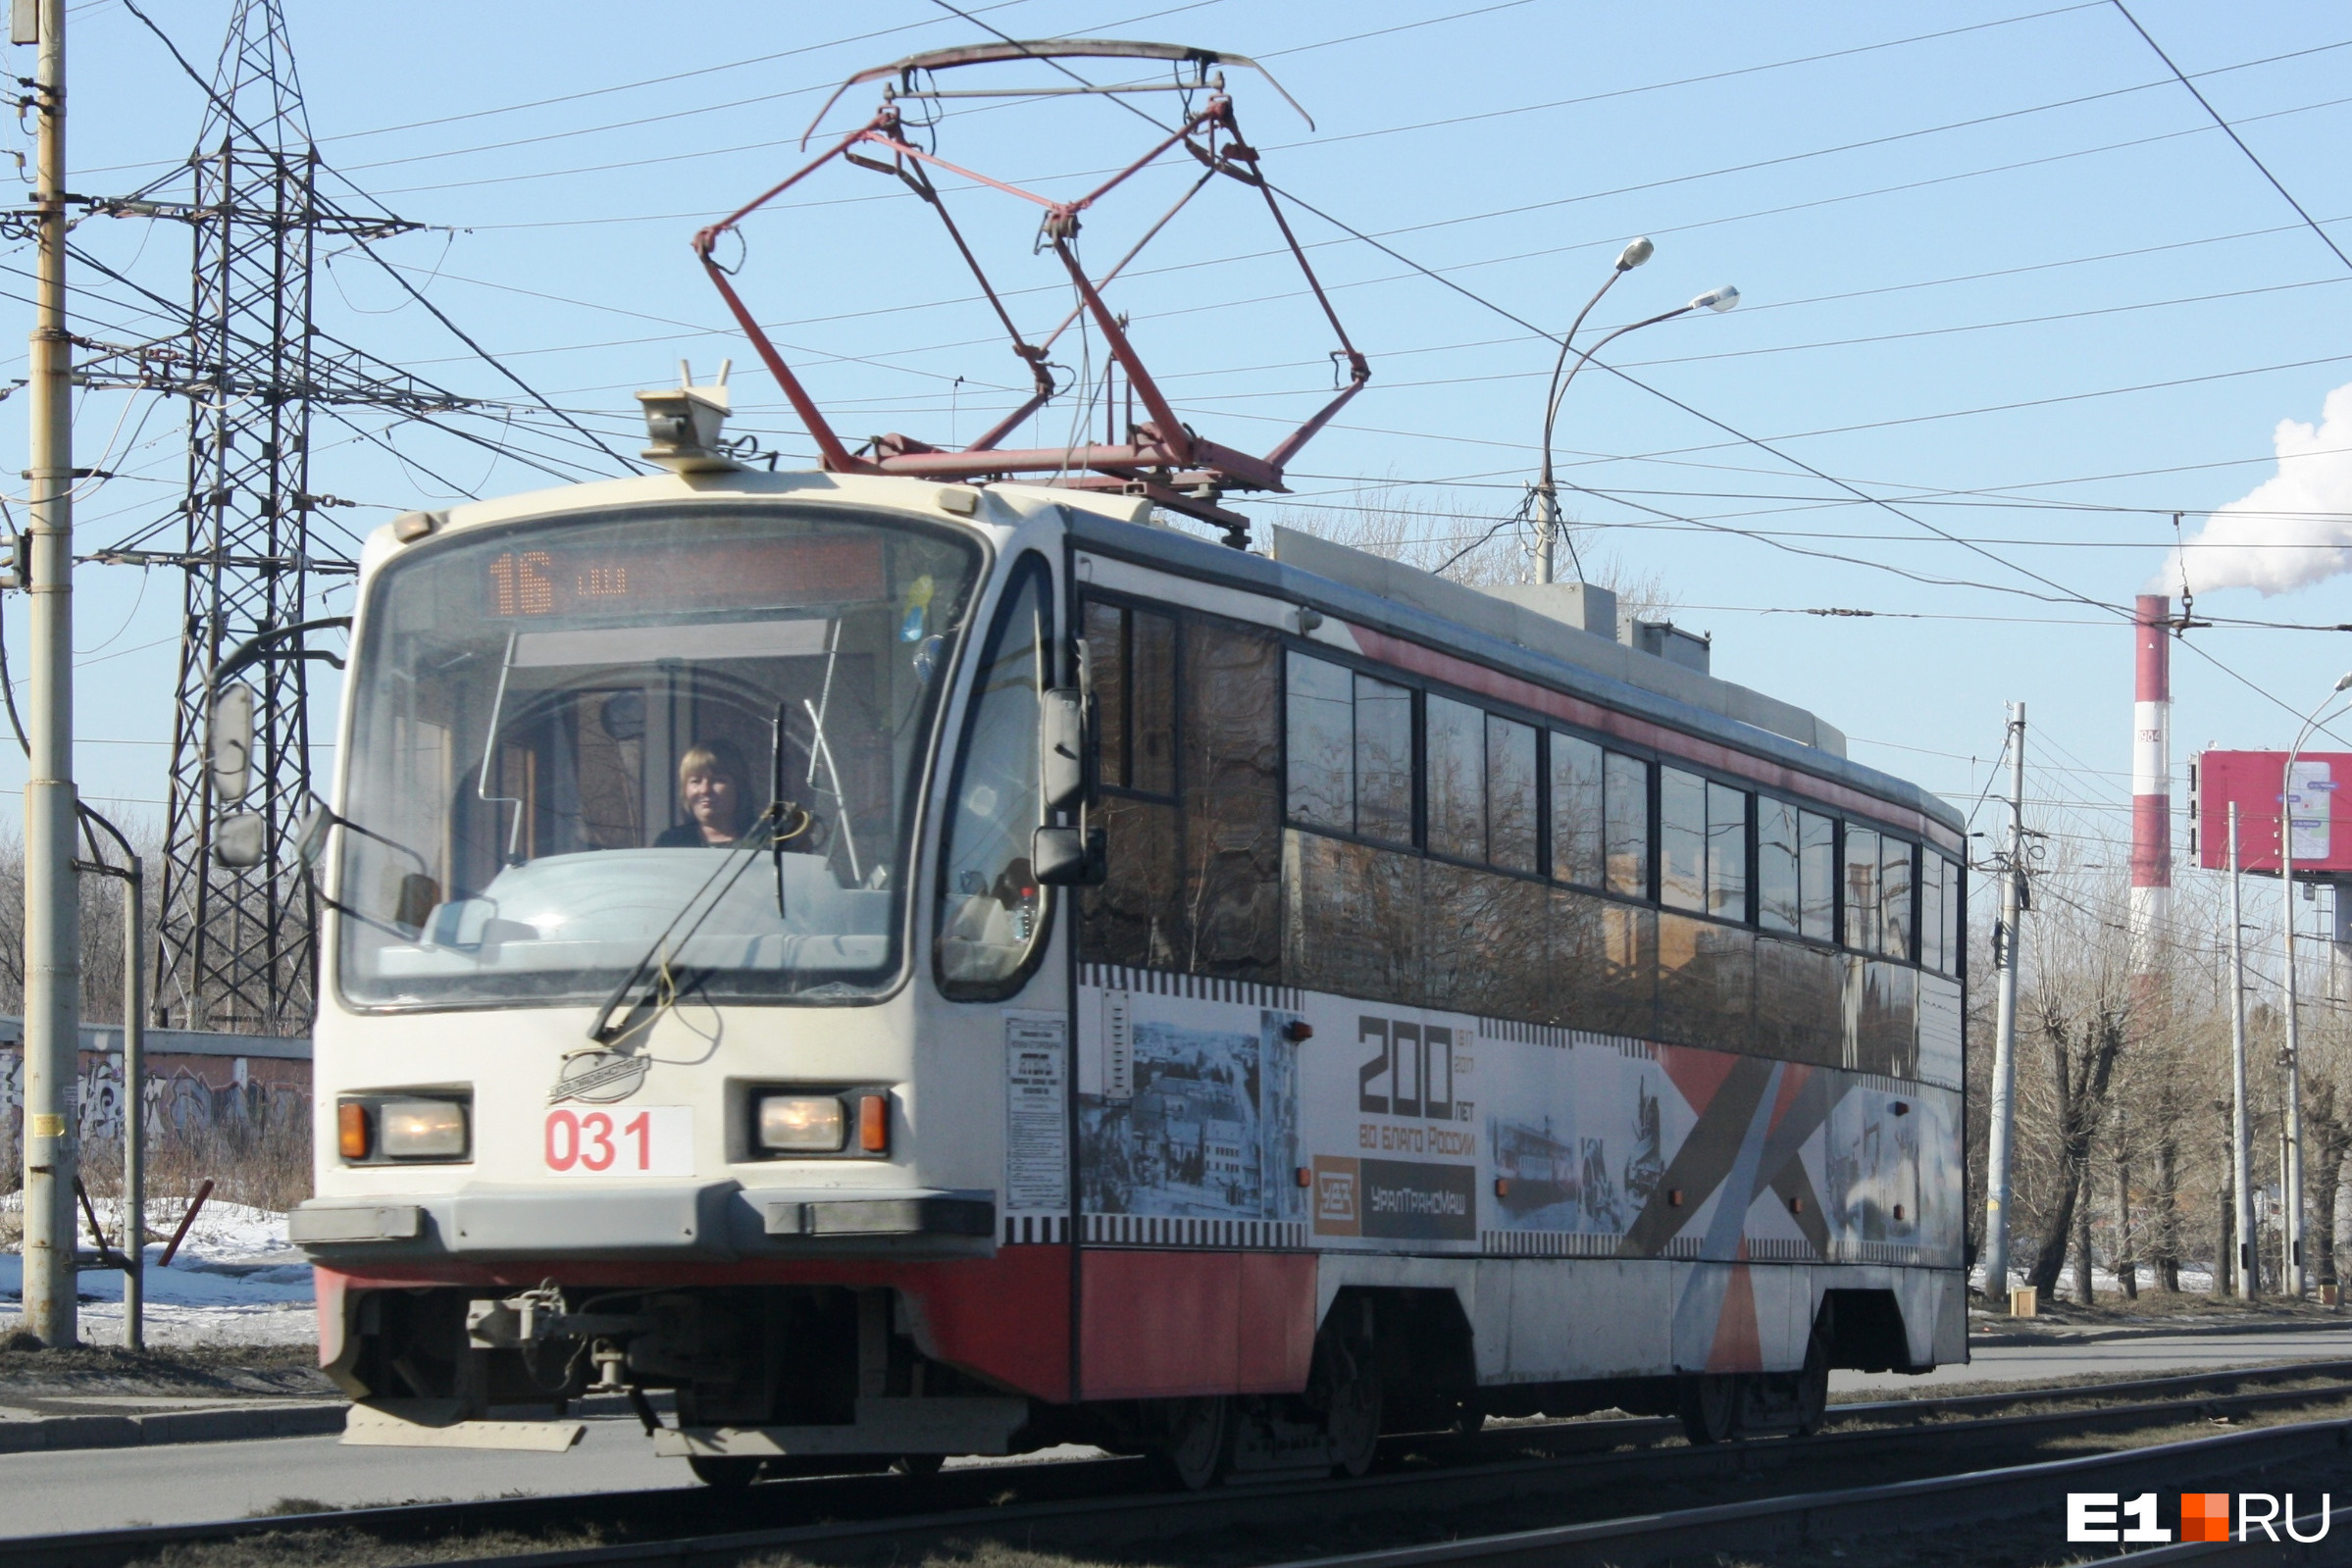 Екатеринбуржцам объявили о закрытии популярного трамвайного маршрута, который идет через центр